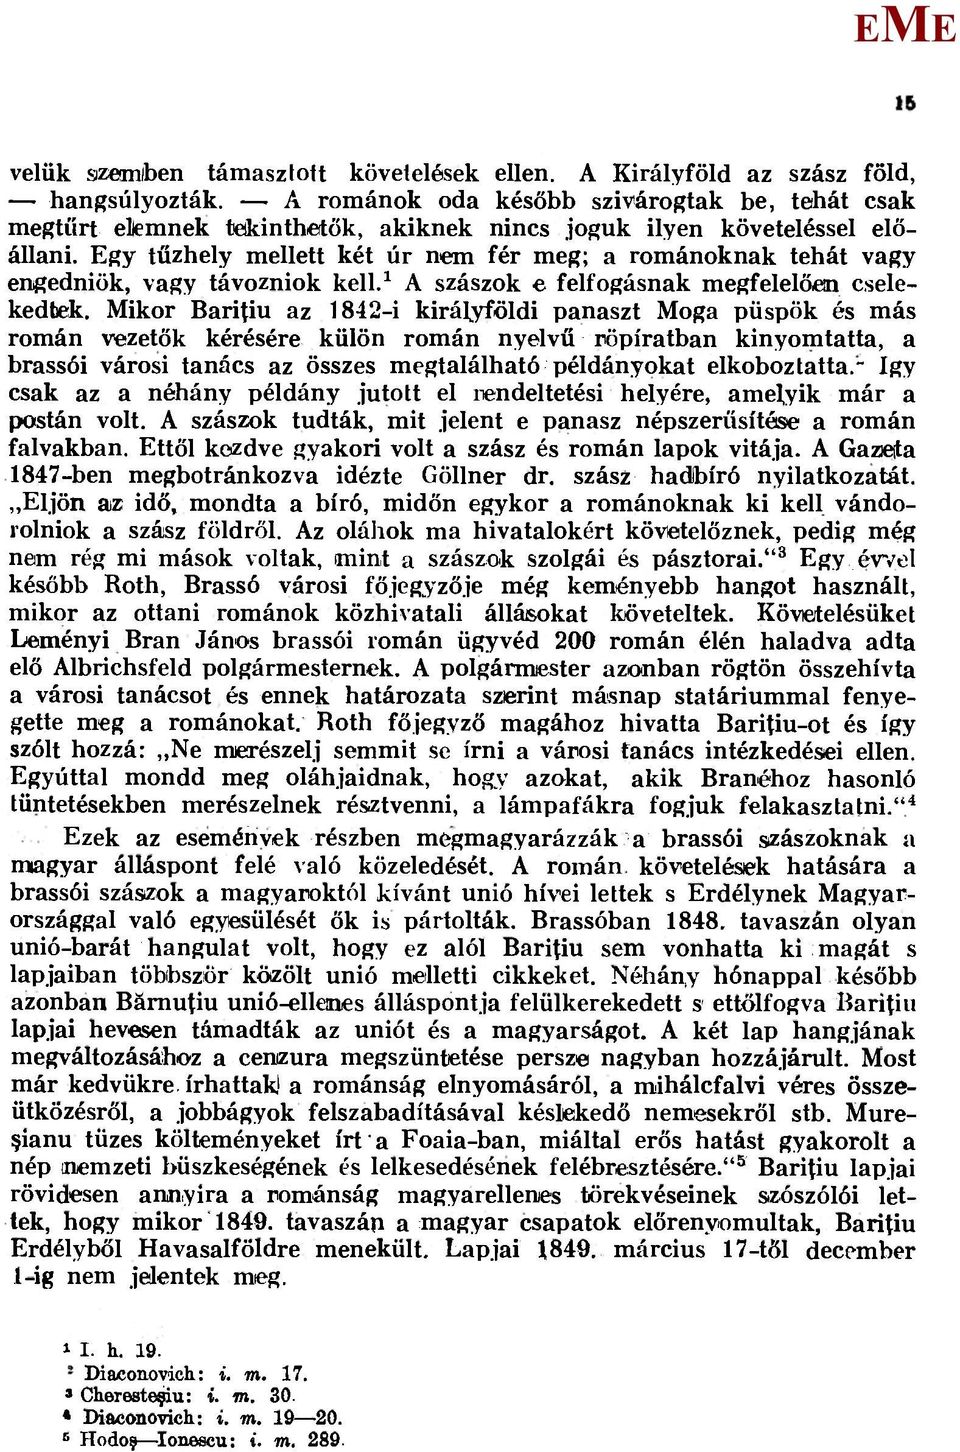 ikor Baritiu az 1842-i királyföldi panaszt oga püspök és más román vezetők kérésére külön román nyelvű röpiratban kinyomtatta, a brassói városi tanács az összes megtalálható példányokat elkoboztatta.